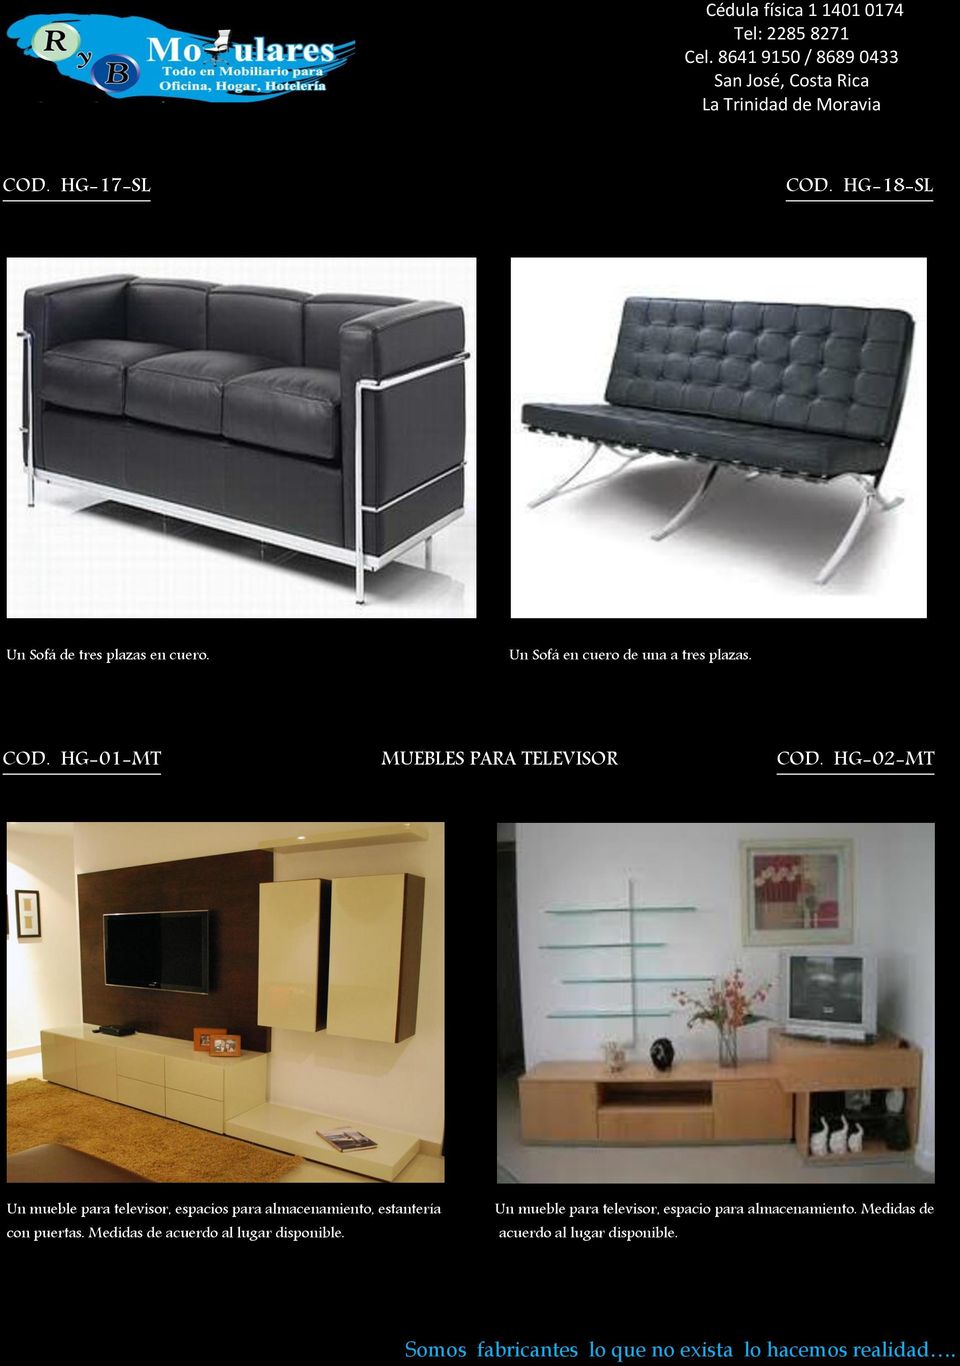 HG-02-MT Un mueble para televisor, espacios para almacenamiento, estantería con